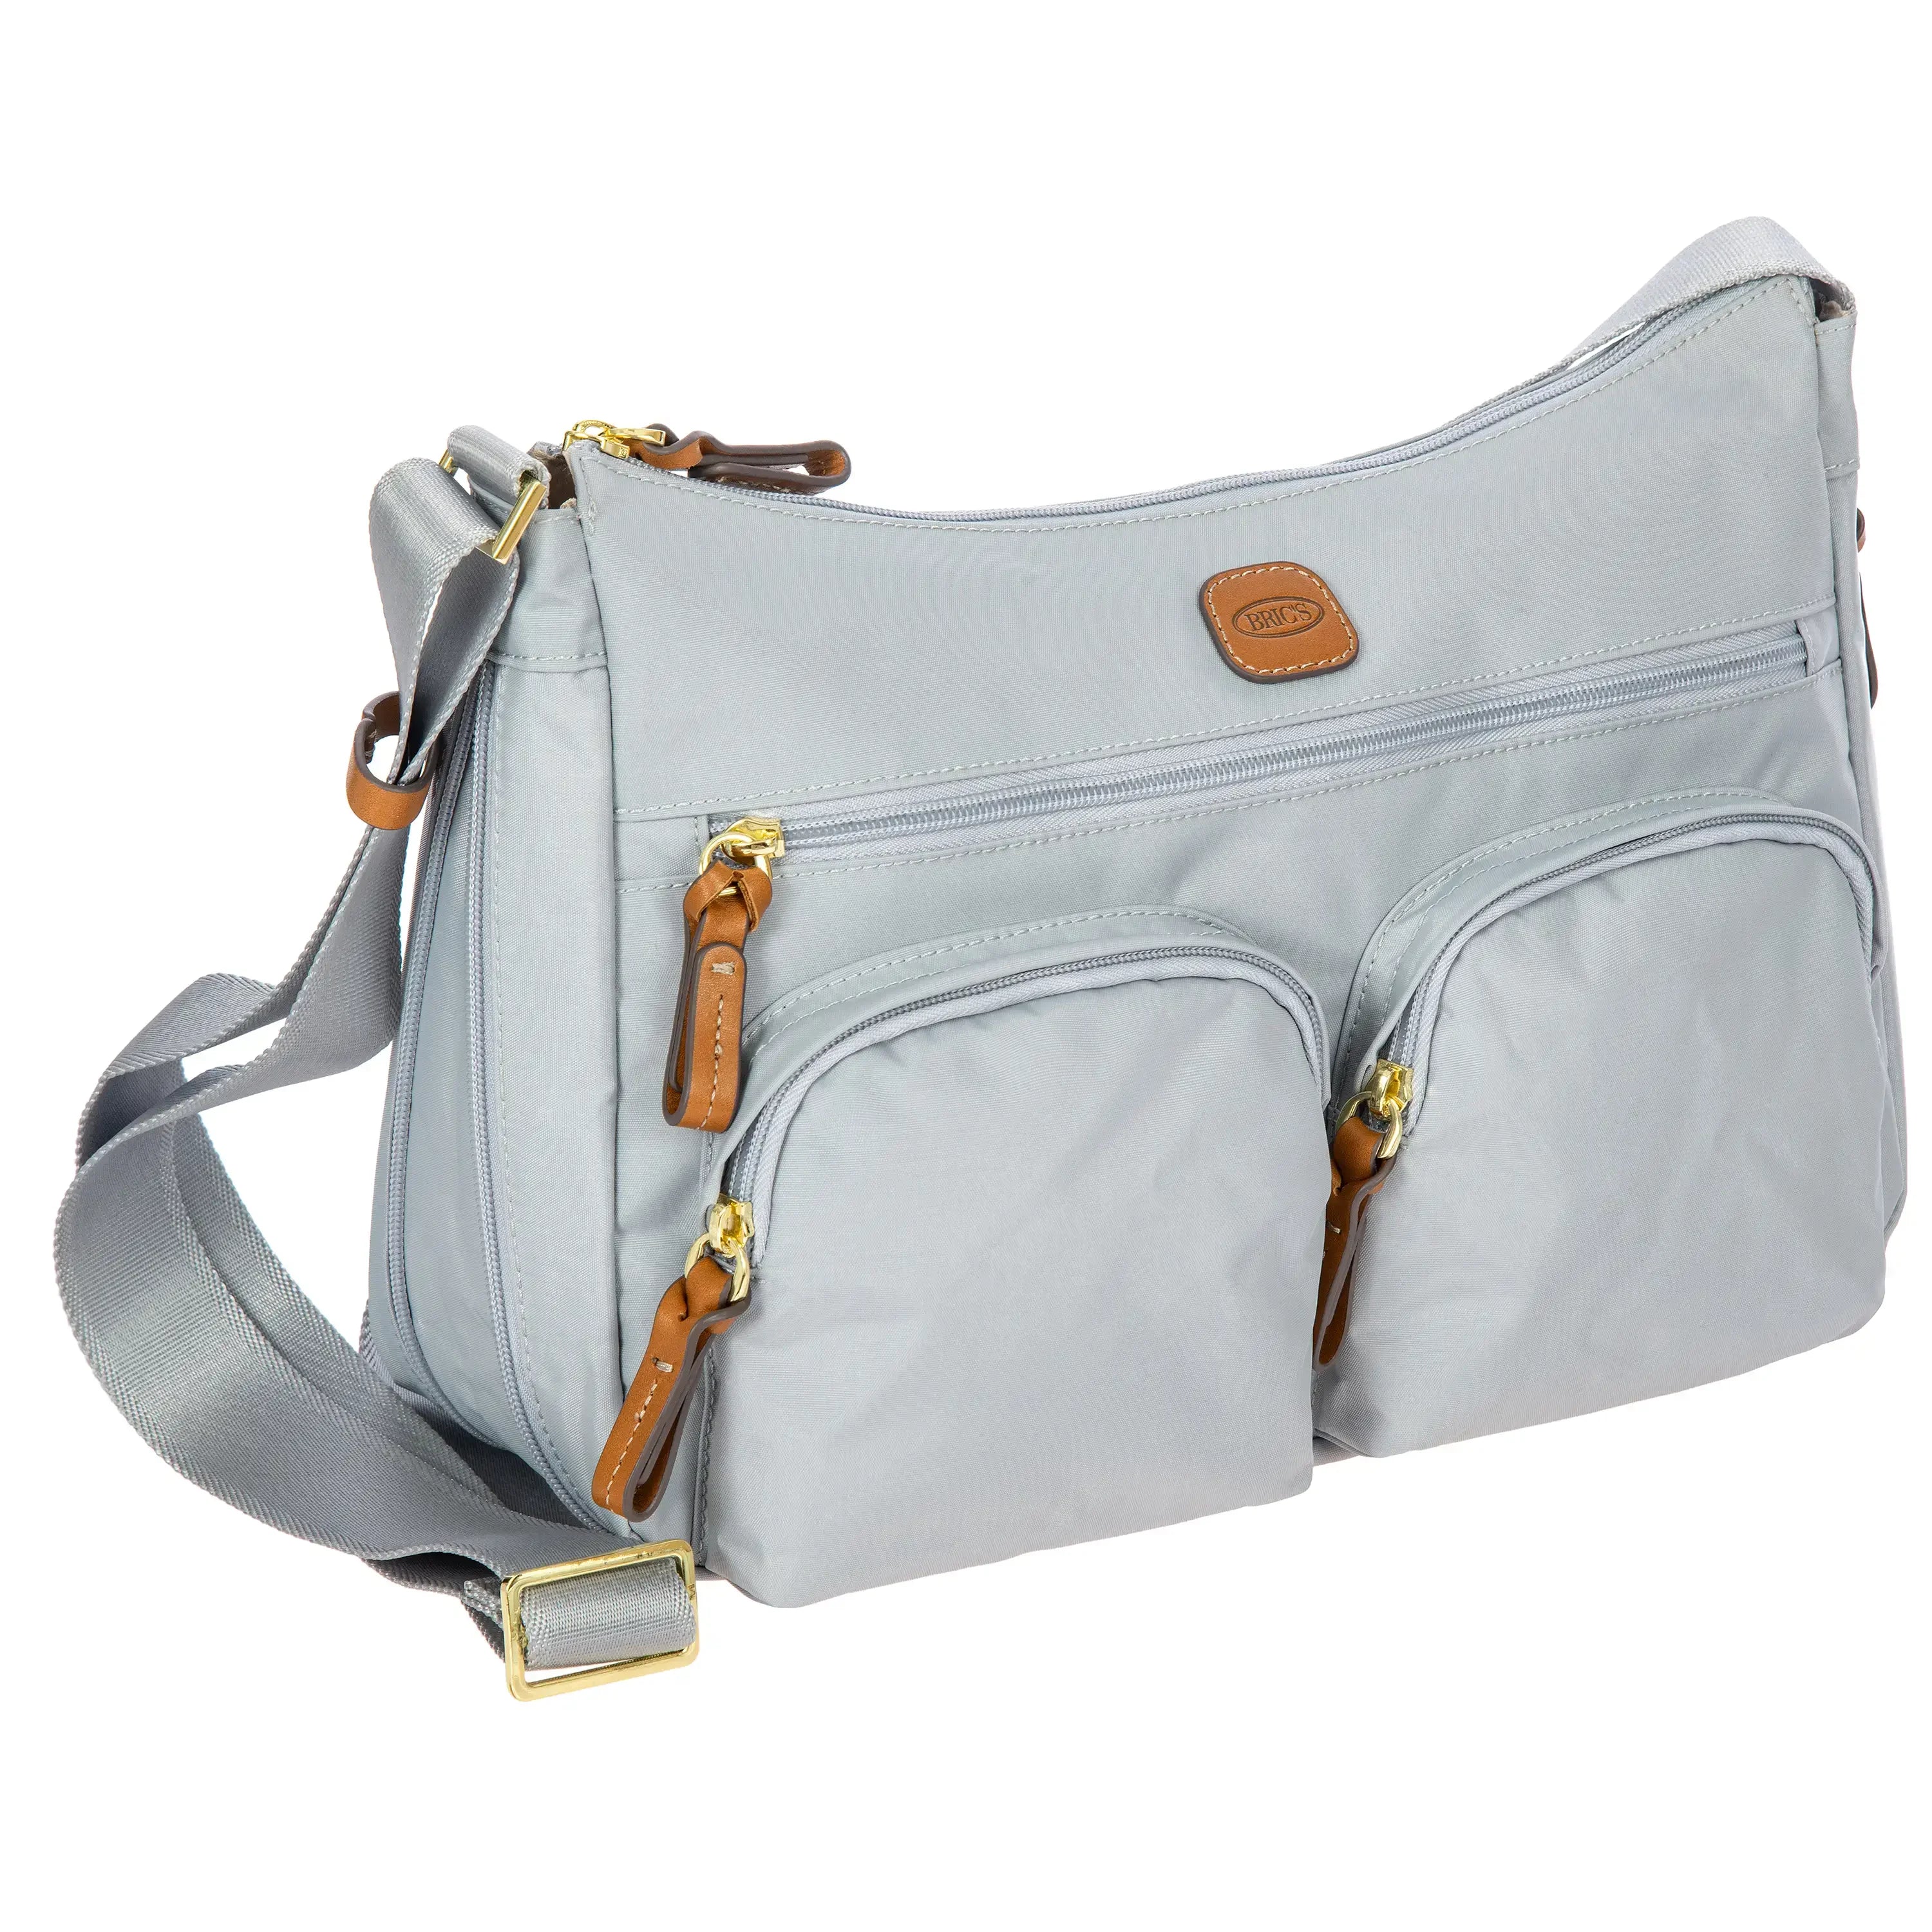 Brics X-Bag shoulder bag 34 cm - Silver